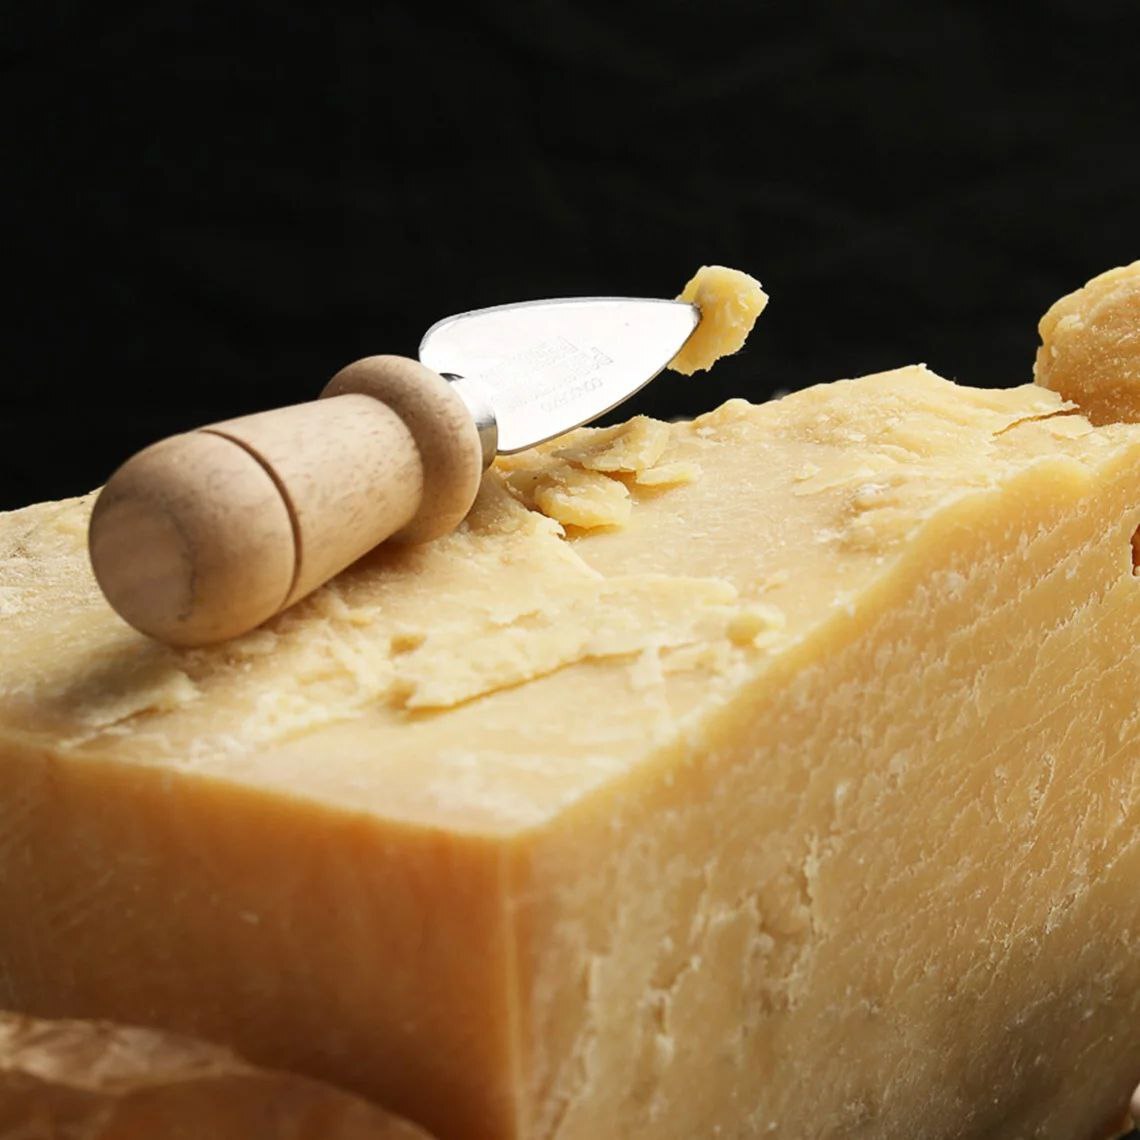 Купить сыры от производителя. Сыр Гранд Вятка. Гранд Вятка пармезан. Mantova сыр. Монтазио сыр с плесенью.